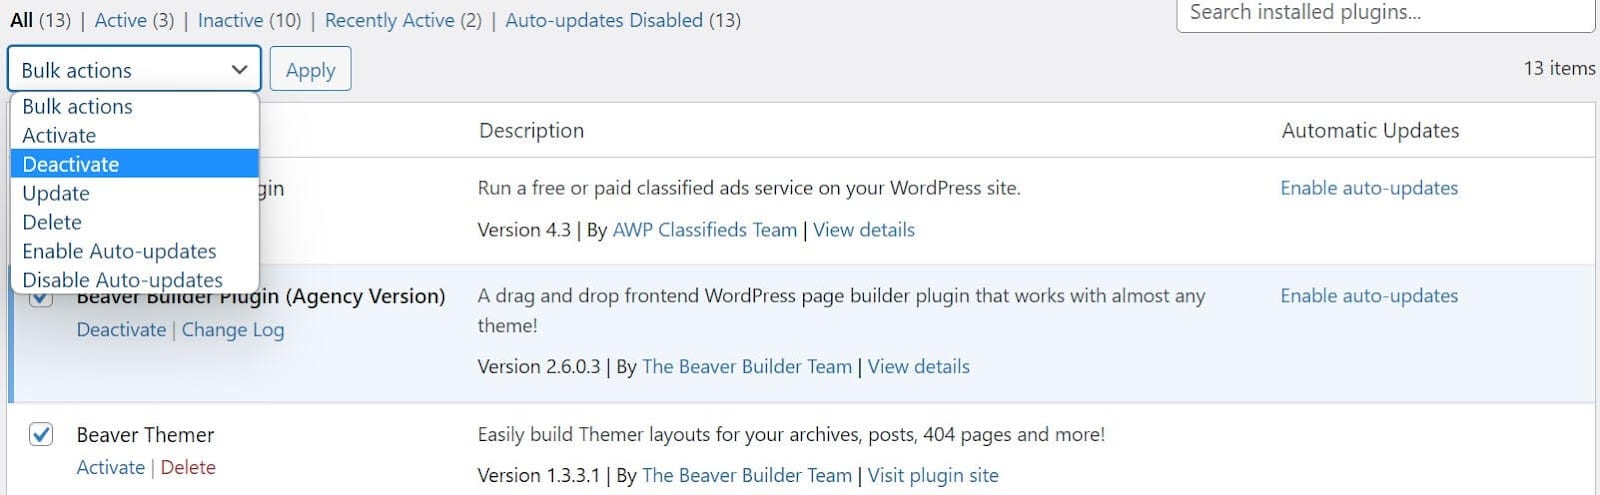 Desativação de plugins WordPress em massa